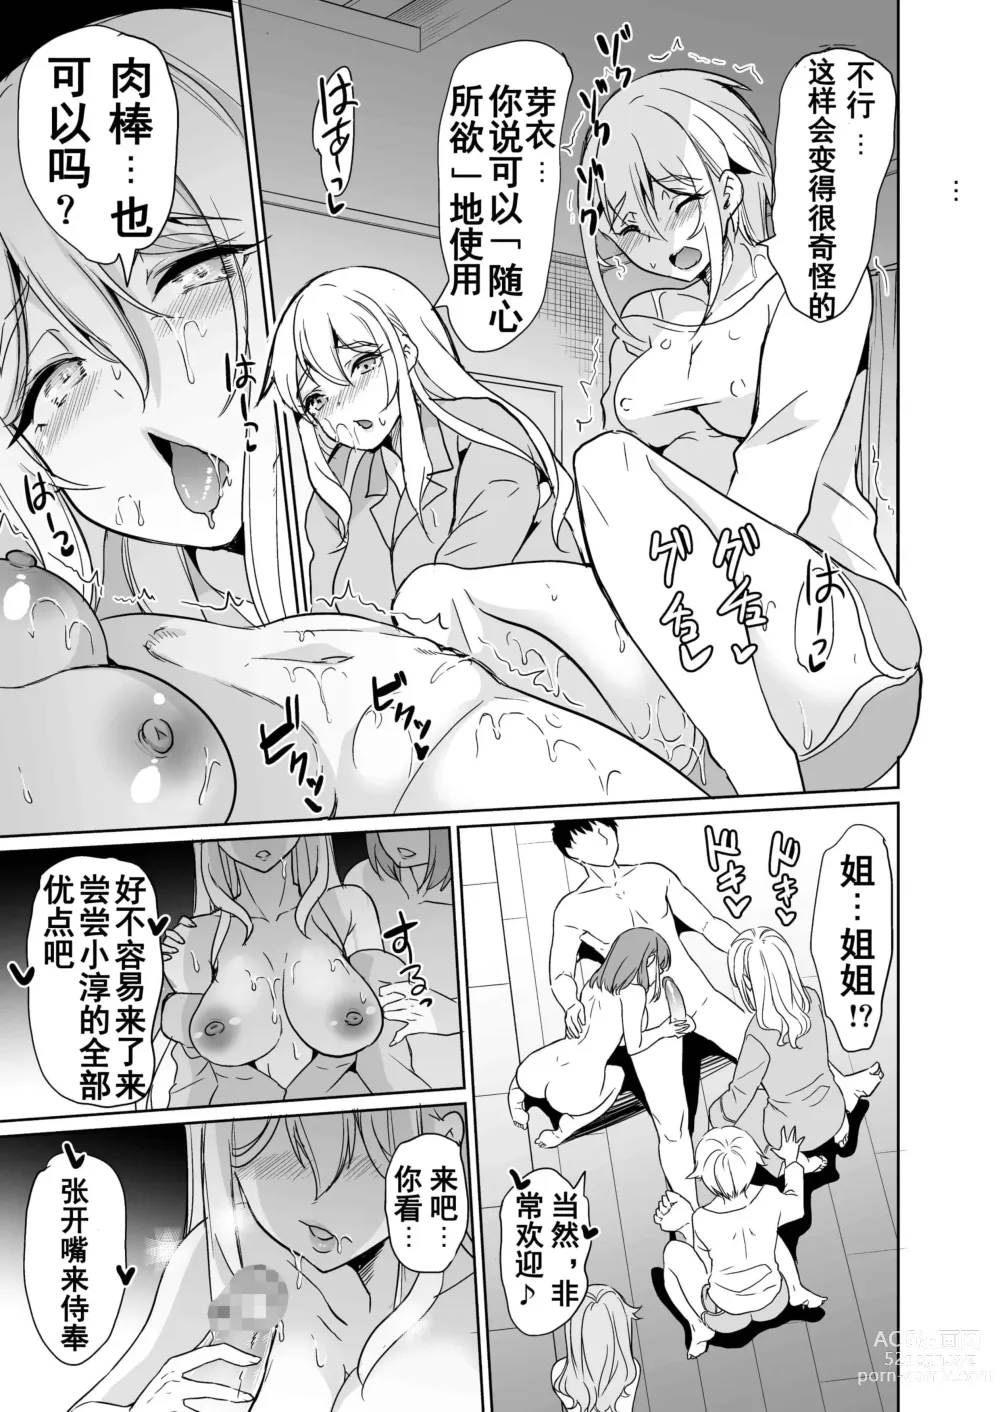 Page 349 of doujinshi ハーレムは彼女の匂い +  妻のNGが無くなっていく整合